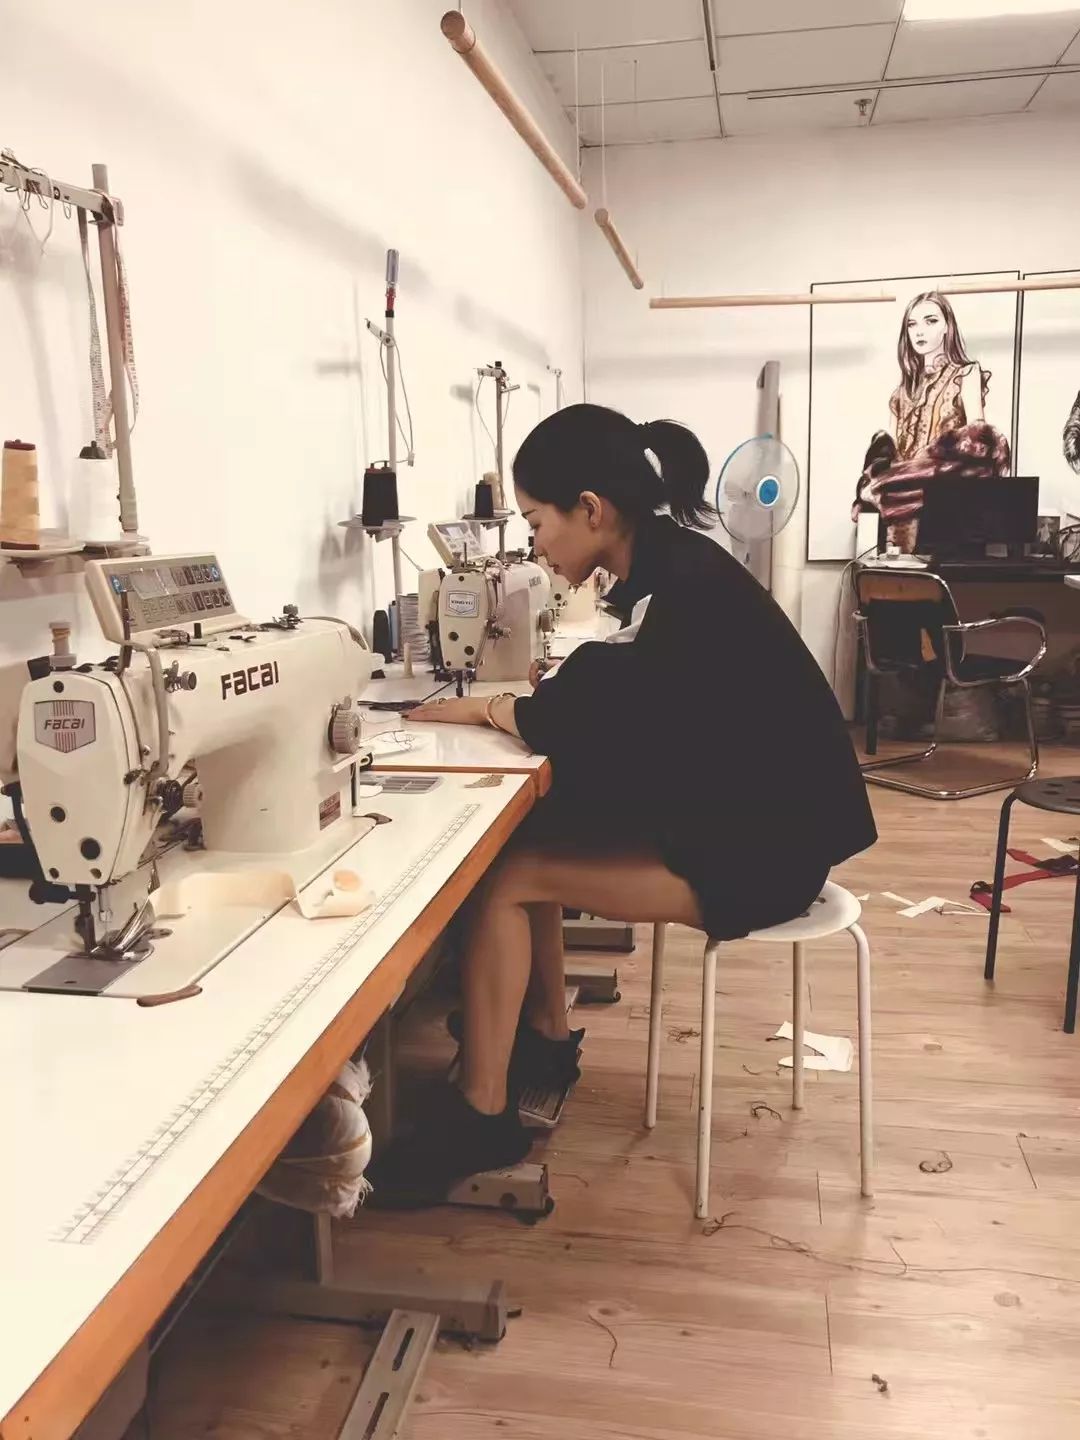 服装工艺,裁剪,缝纫,特殊工艺,学会可以独立完成各种成衣制作!